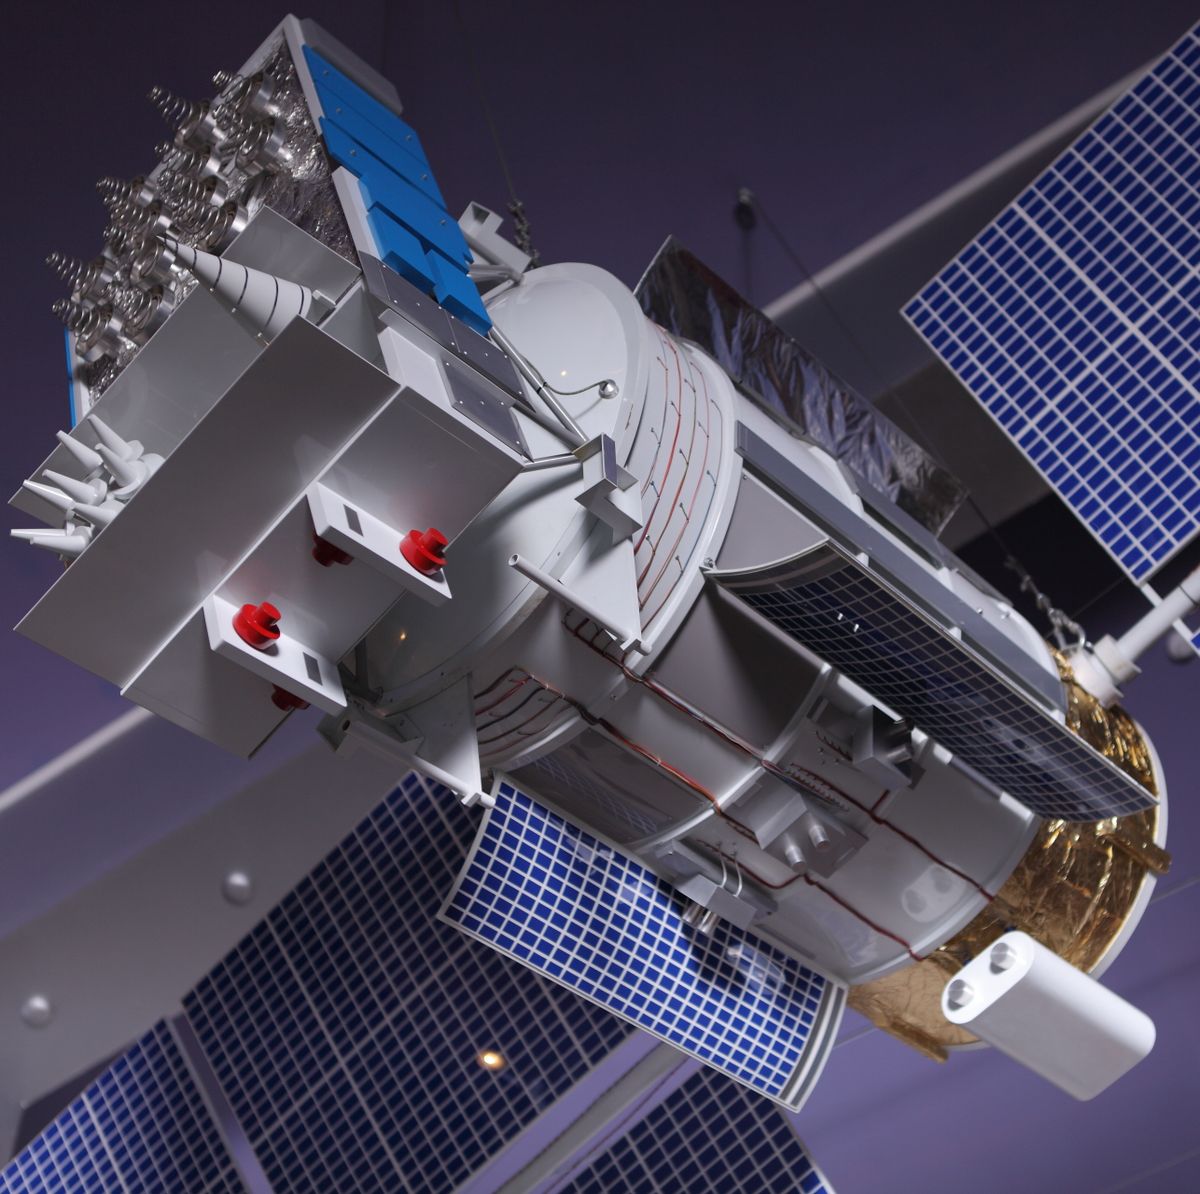 glonass 2 russian gps satellite